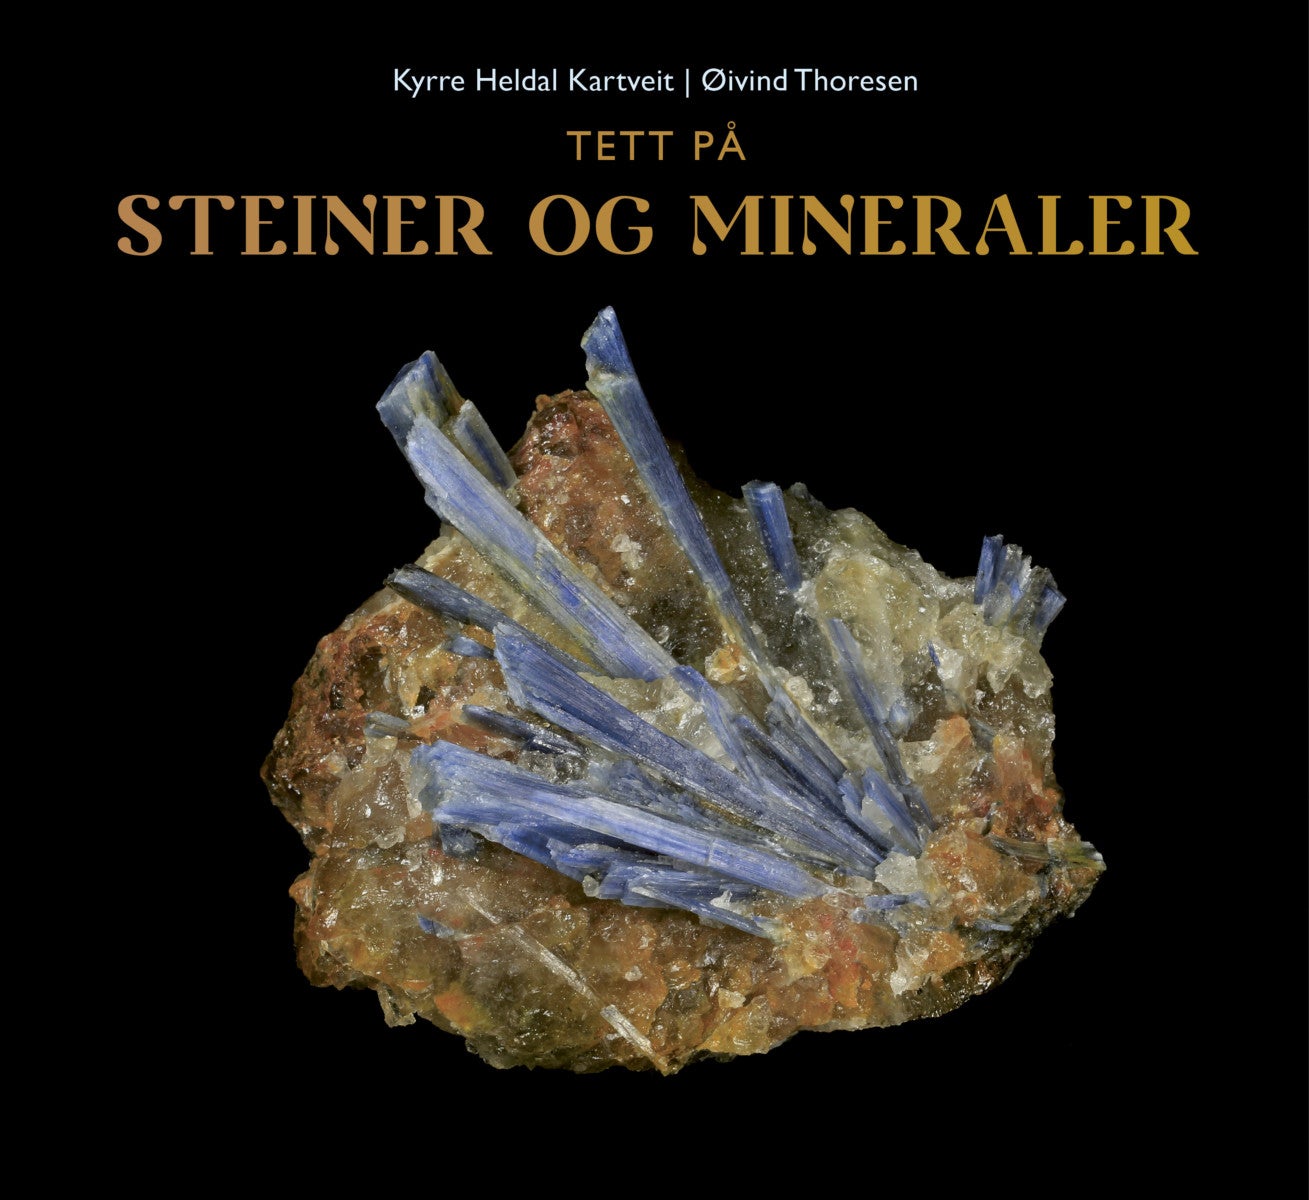 Tett på steiner og mineraler av Kyrre Heldal Kartveit